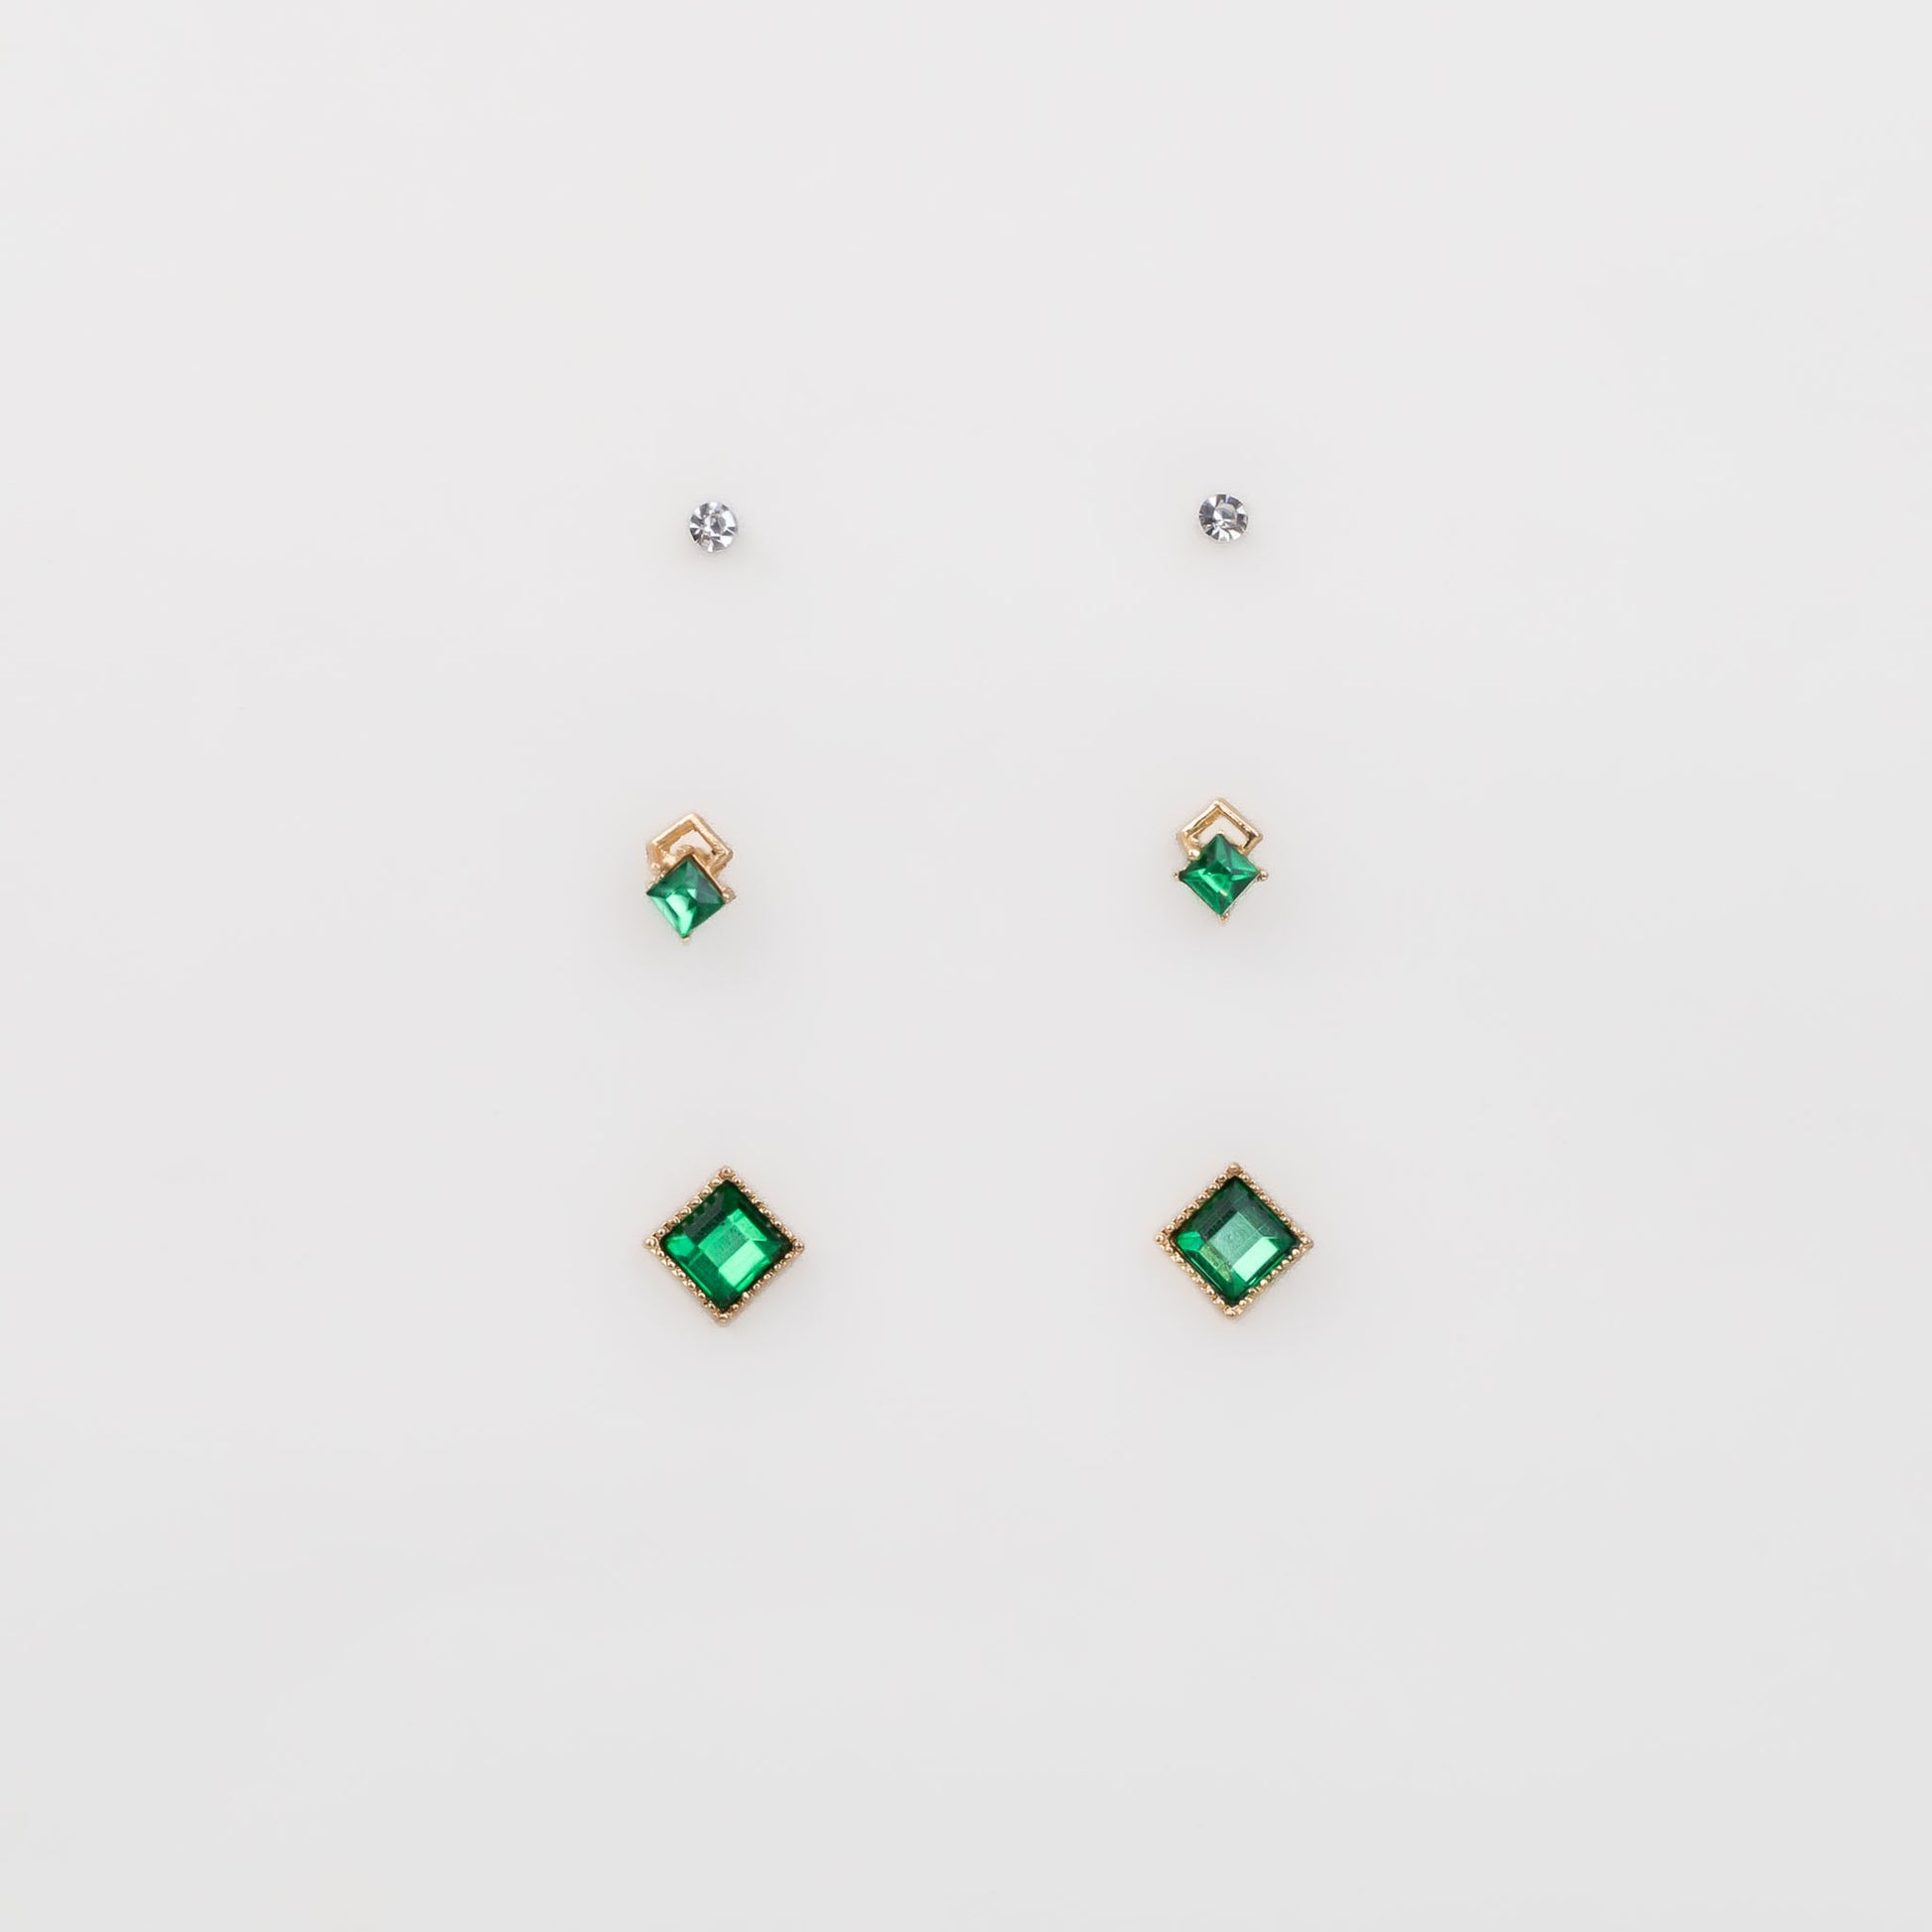 Cercei mici aurii în formă de romb cu pietre, set 3 perechi - Verde